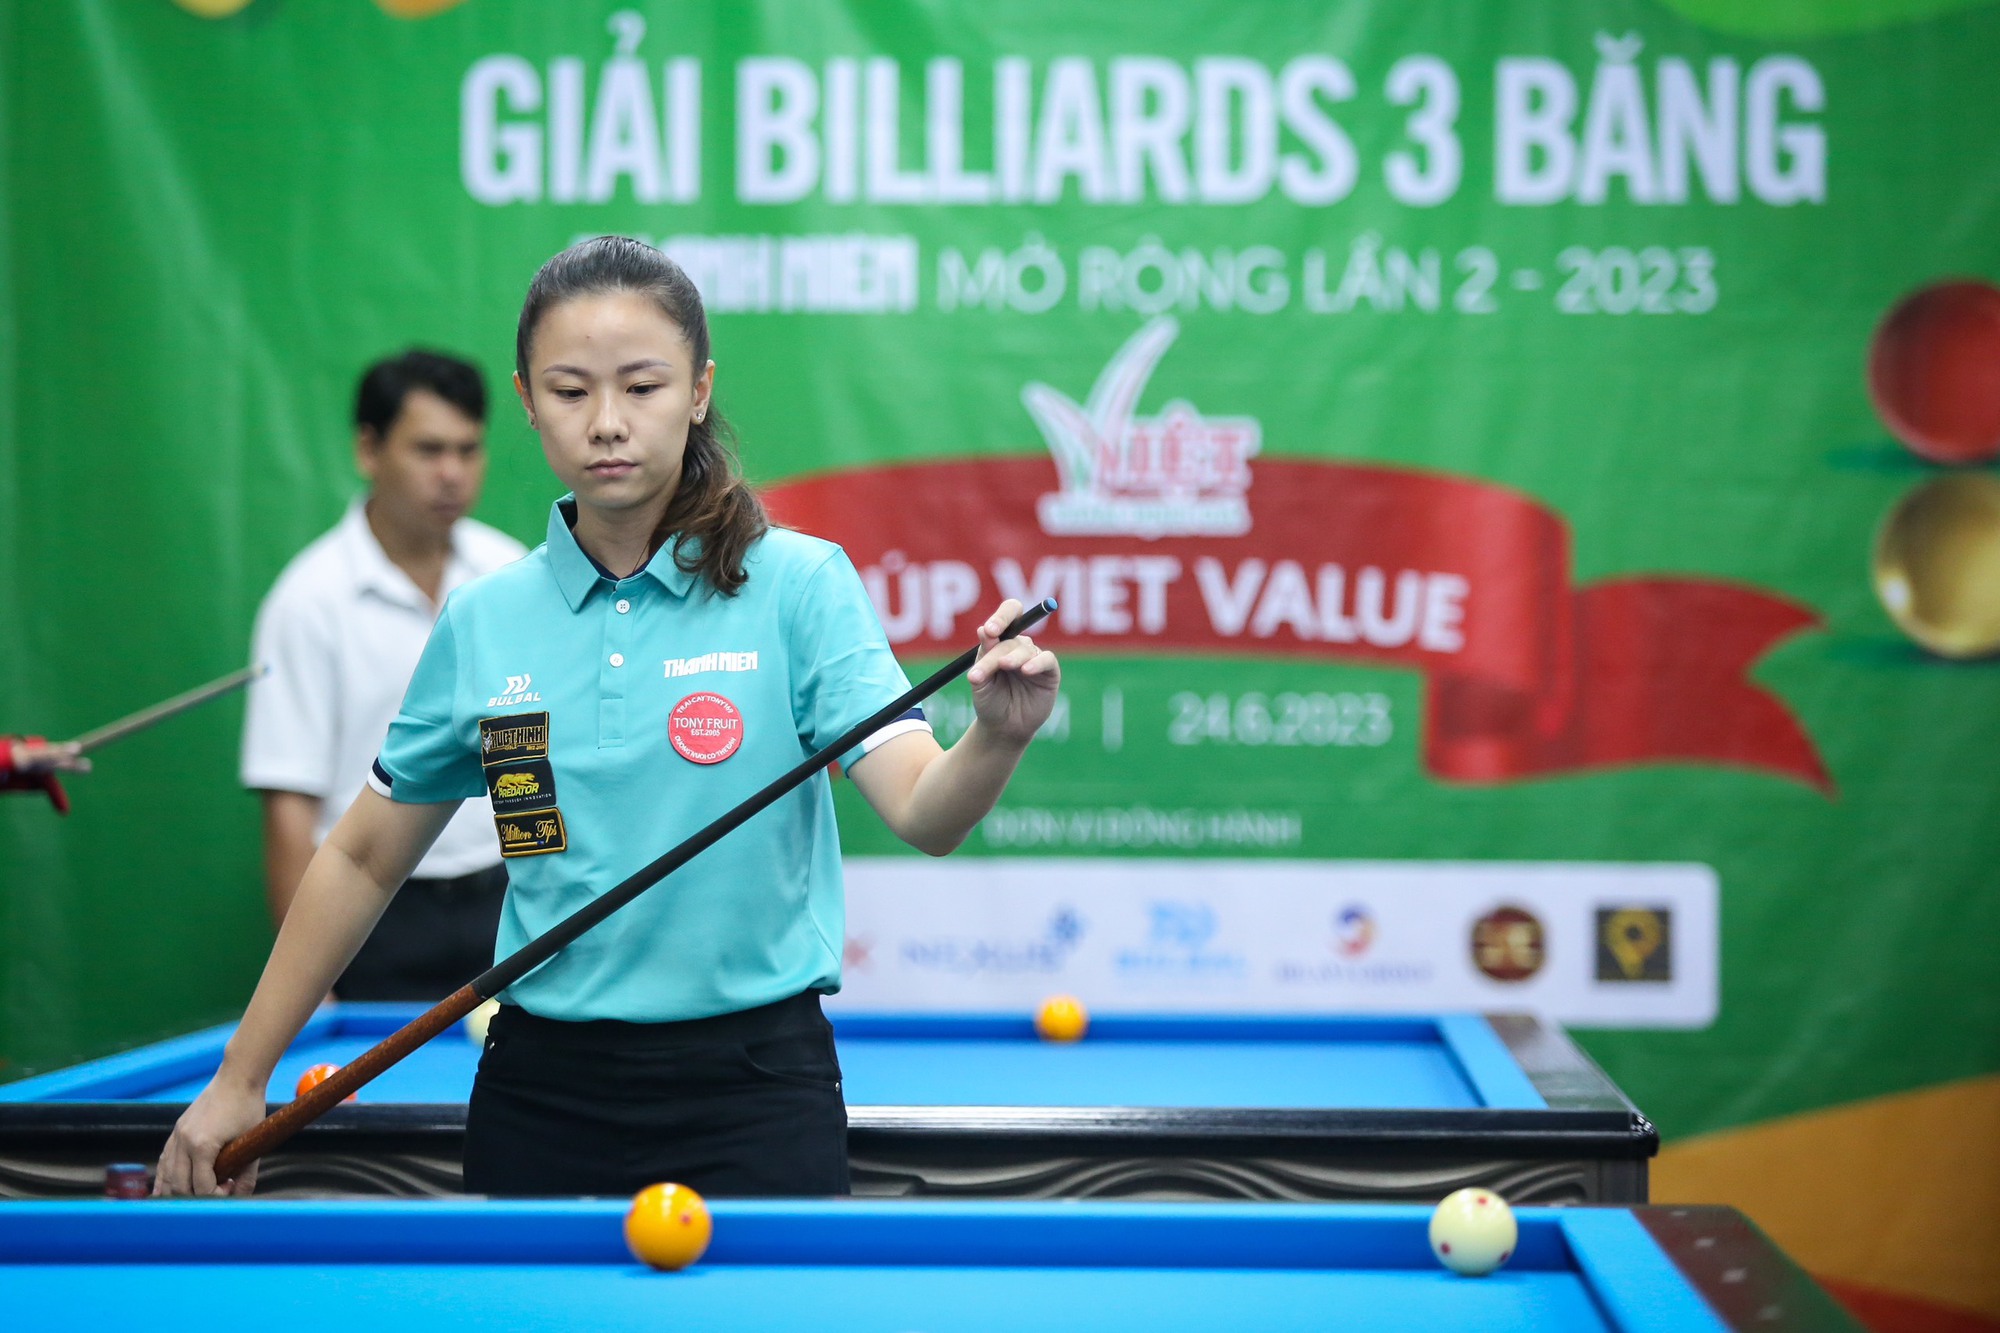 Nguyễn Hoàng Yến Nhi hứa hẹn bùng nổ tại giải billiards  3 băng Thanh Niên - Ảnh 6.